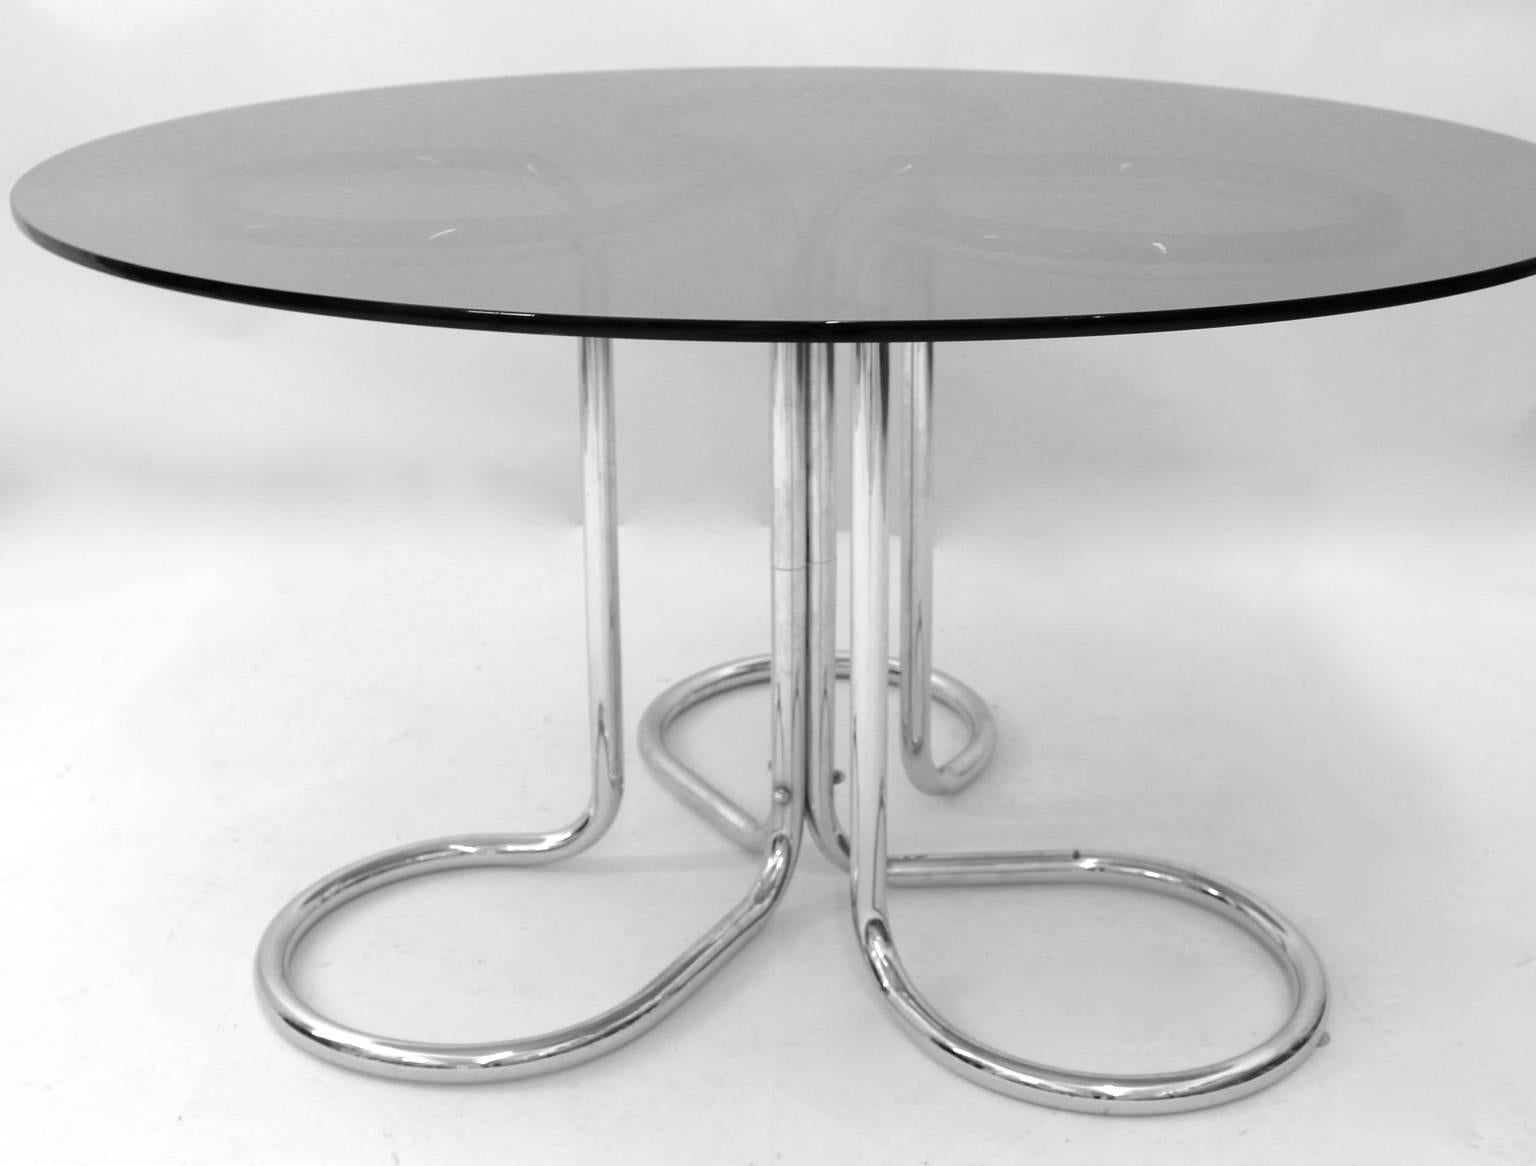 Space Age Vintage Esstisch von Giotto Stoppino 1970er Jahre Italien, die eine gebogene verchromte Stahlrohr Basis Konstruktion verfügt. Der Esstisch ist mit einer runden Platte aus Rauchglas versehen.
Der Originalzustand ist gut mit Alters- und